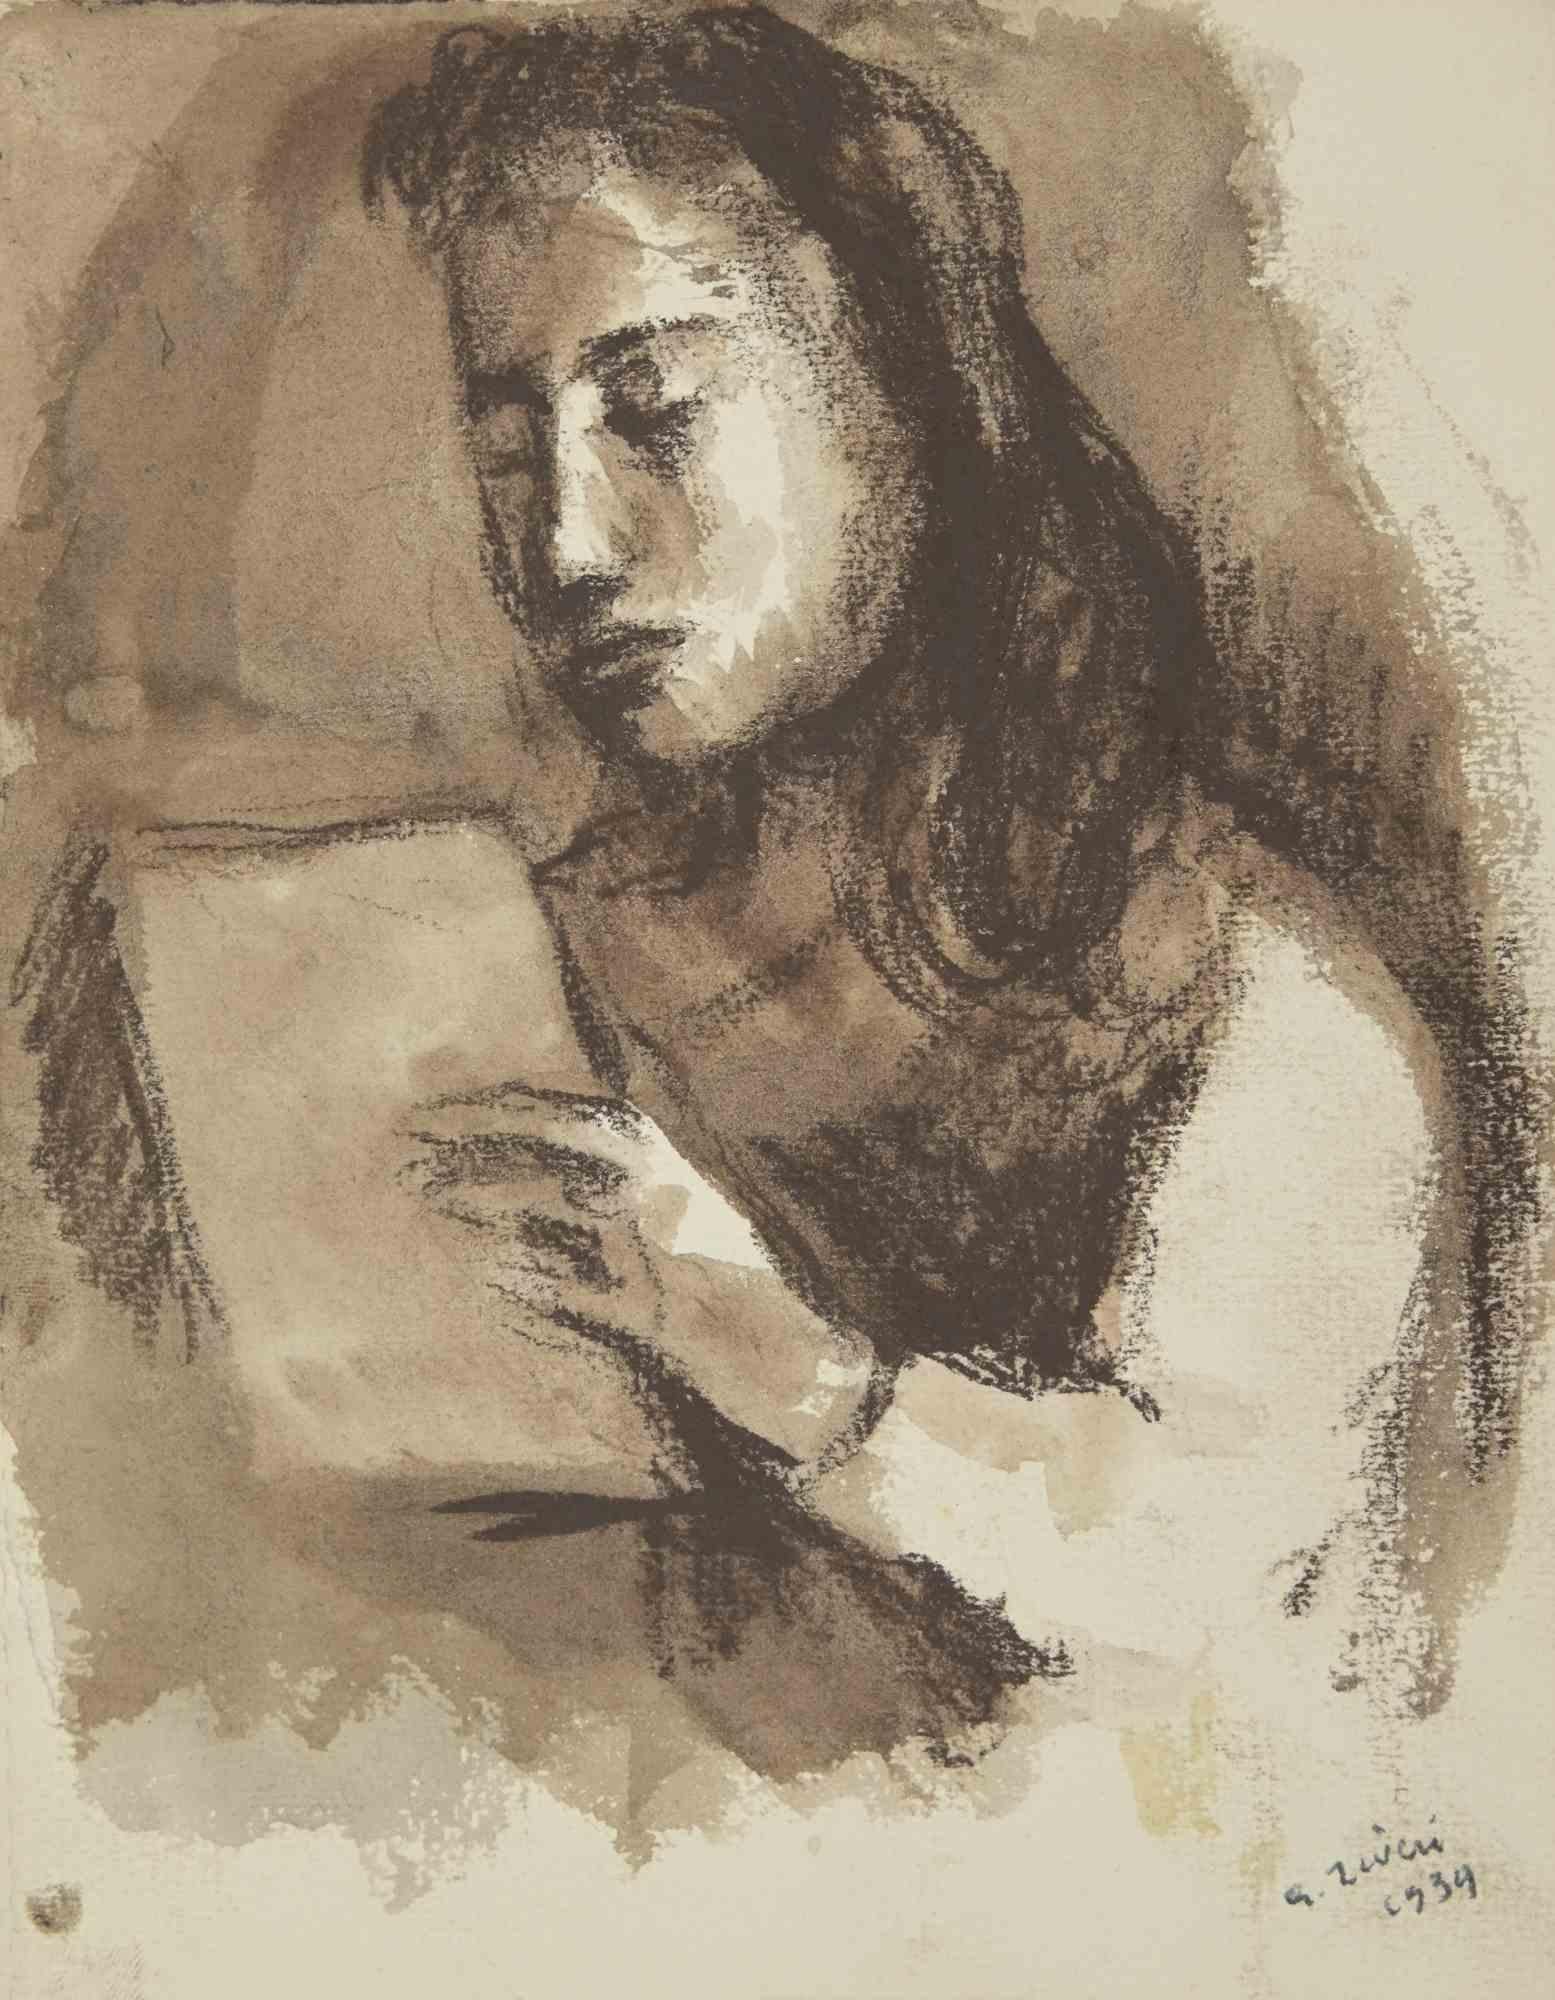 Die  Das lesende Mädchen ist eine Zeichnung von Alberto Ziveri aus dem Jahr 1939

Kohle und Aquarell auf Papier.

Handsigniert.

In gutem Zustand mit leichten Stockflecken.

Das Kunstwerk wird durch geschickte Striche meisterhaft